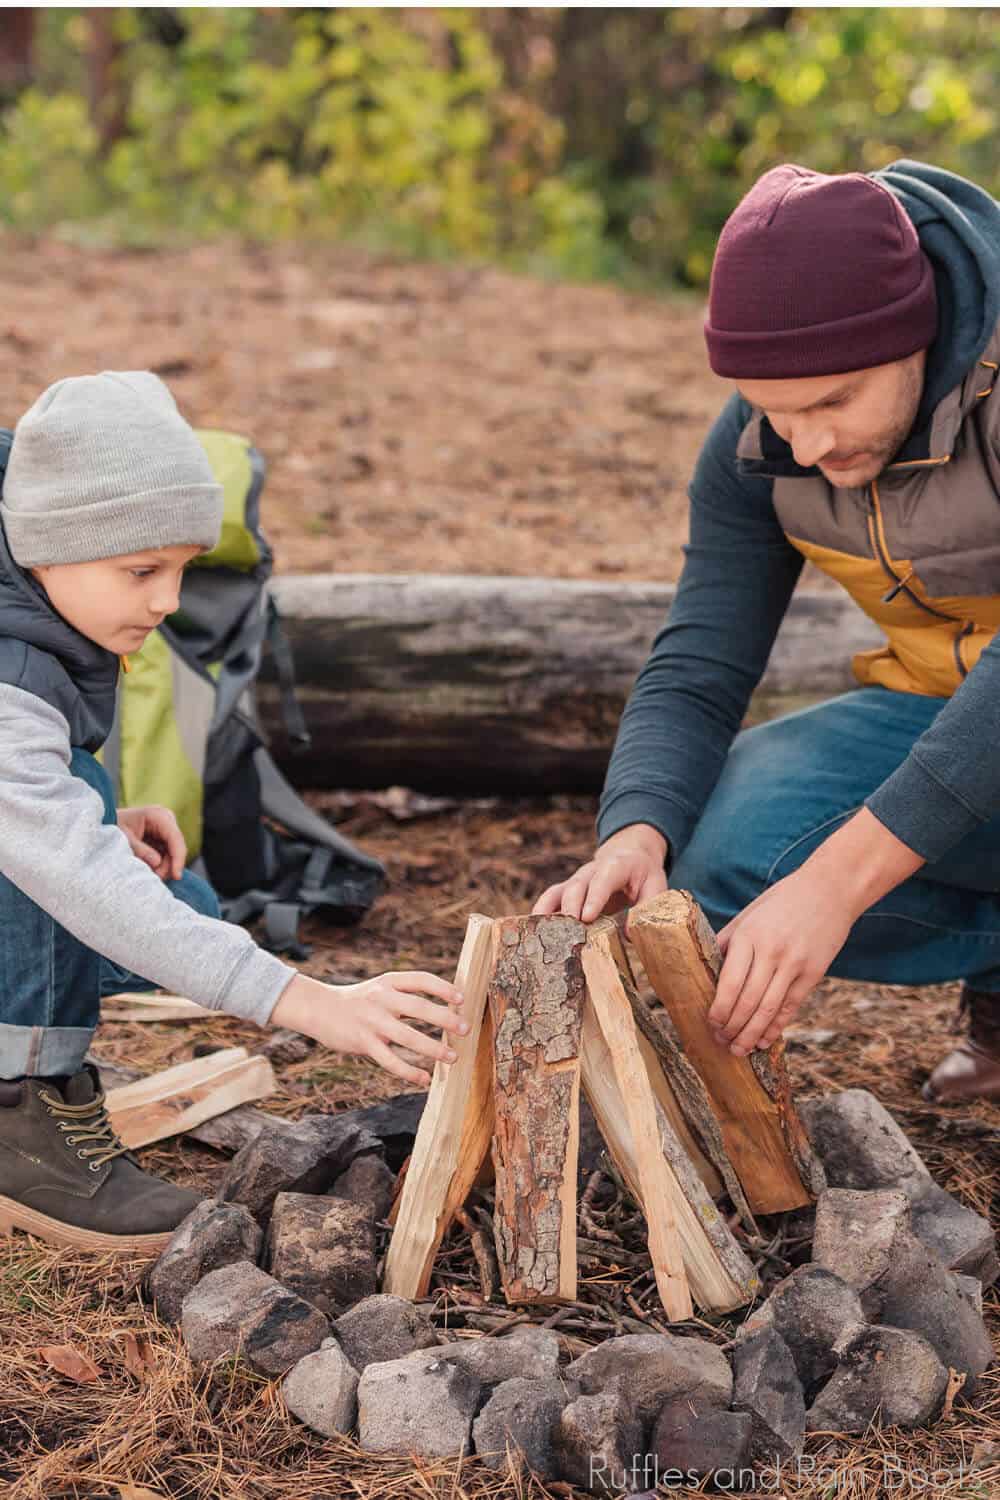 make fun camping chores for kids